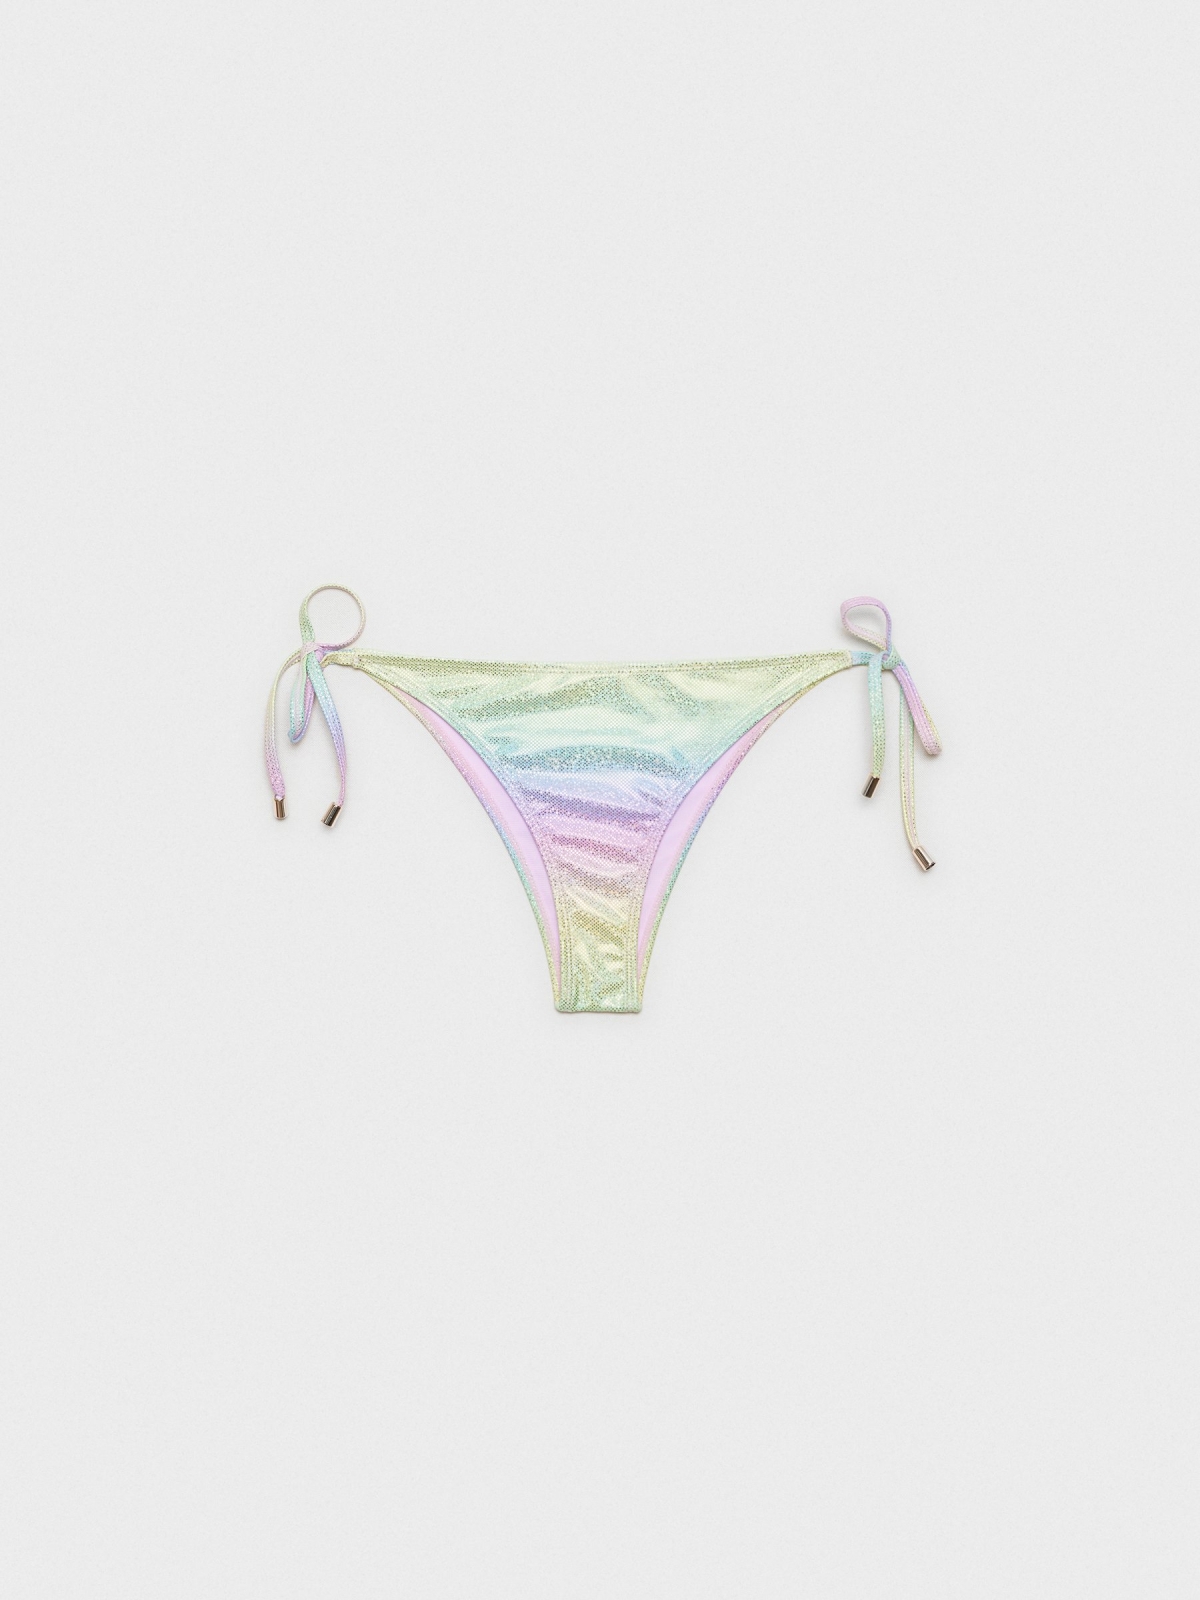  Triangle bikini bottoms with glitter multicolor